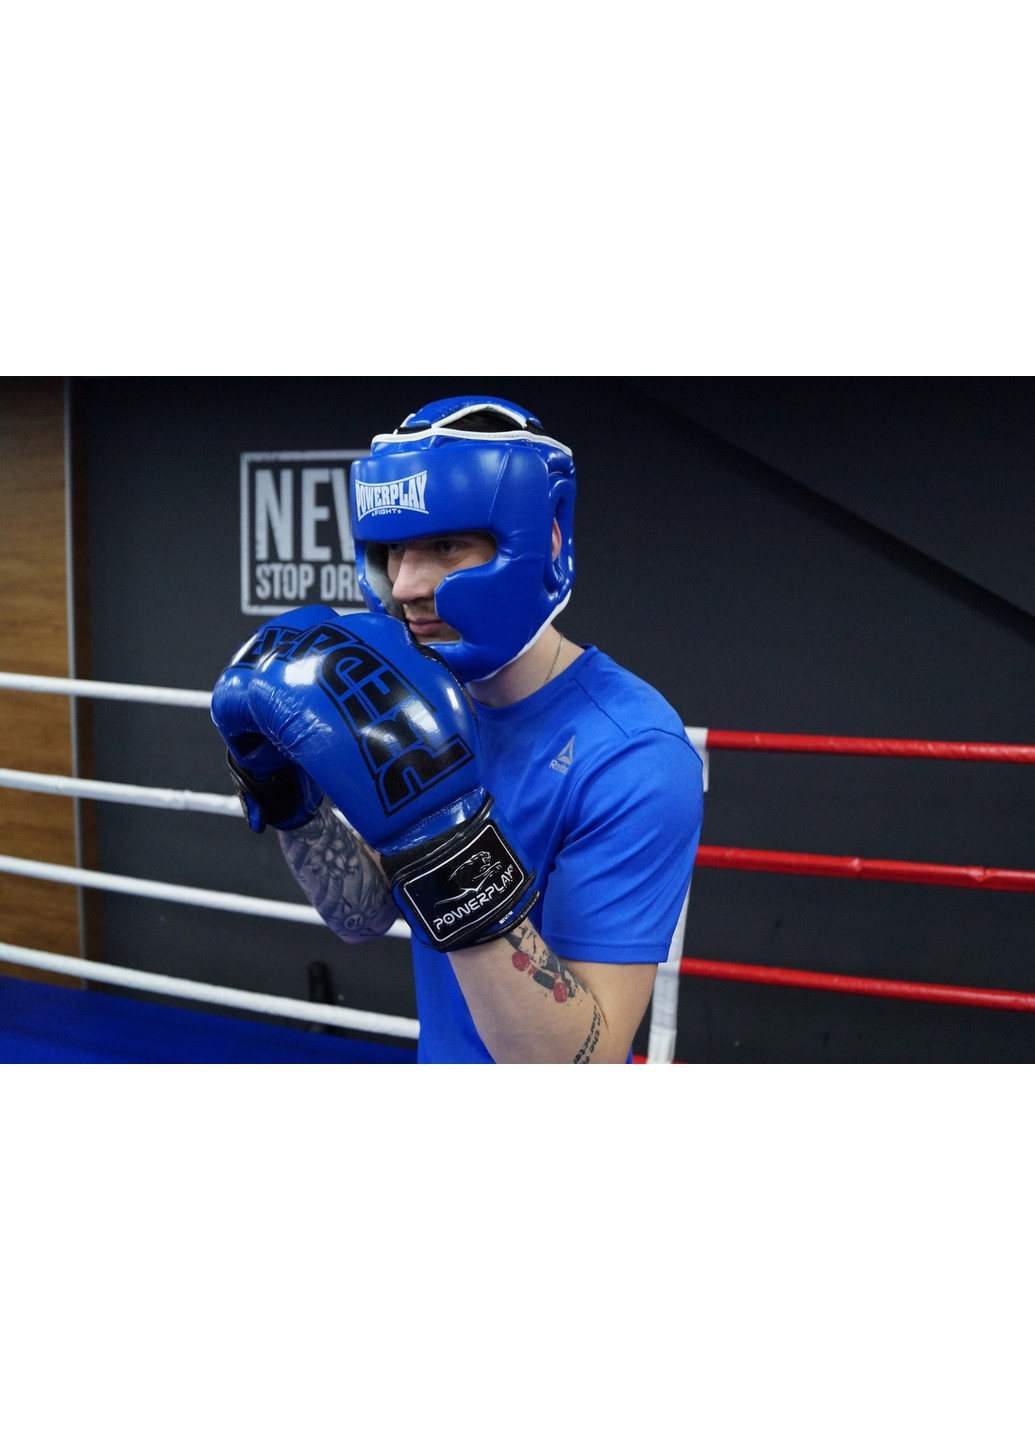 Боксерский шлем тренировочный XS PowerPlay (260498543)